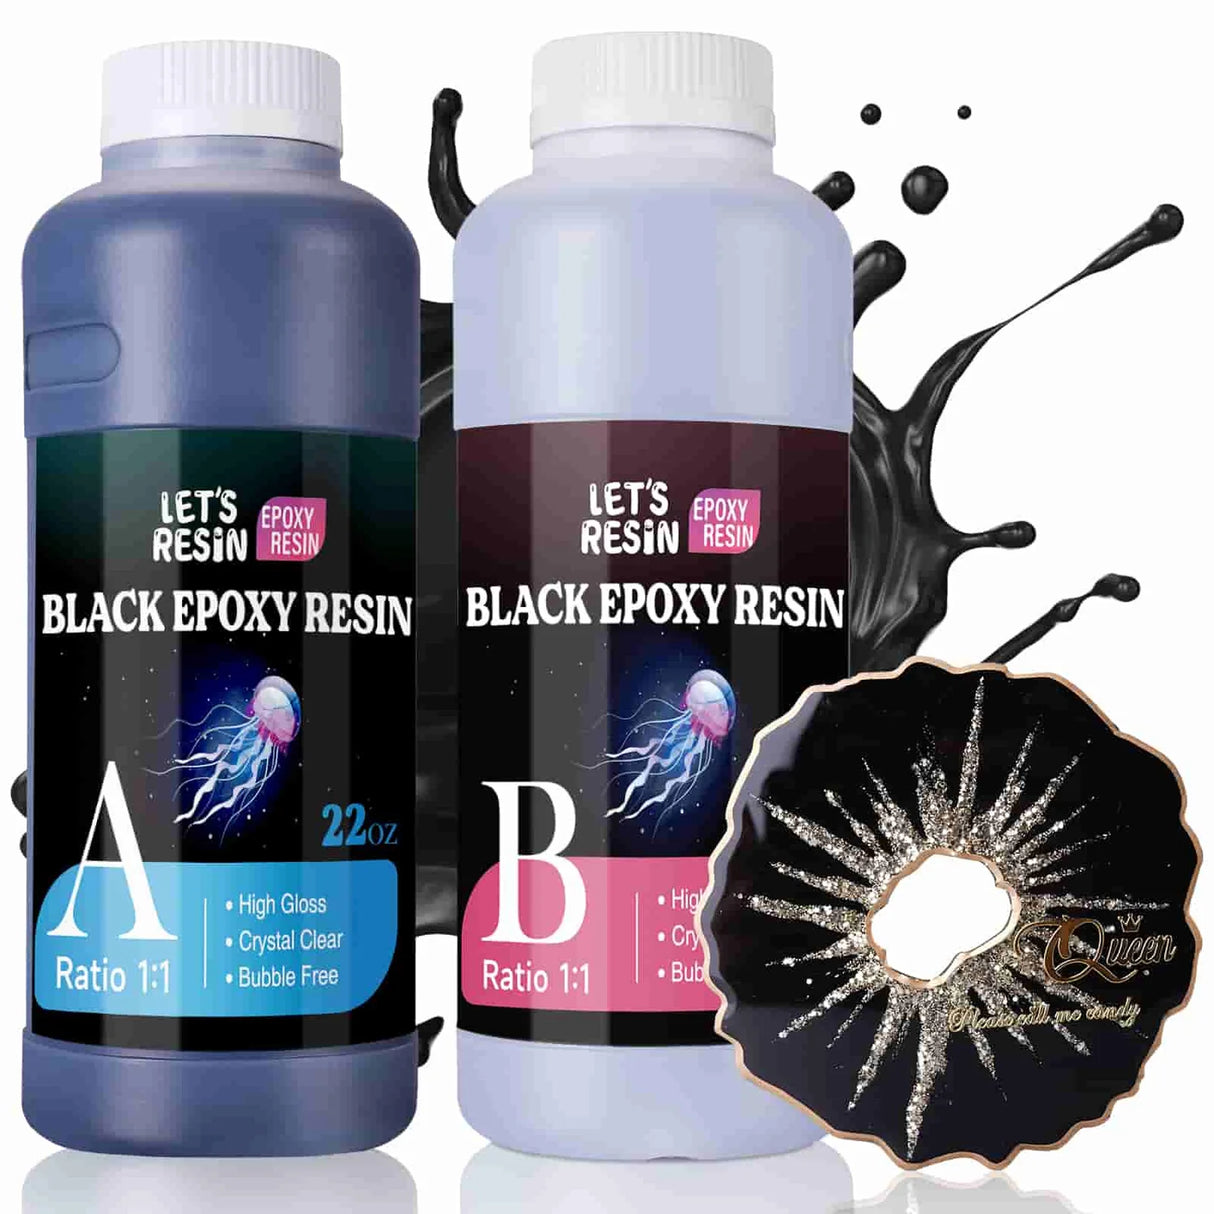 Let's Resin Epoxy Resin - Black